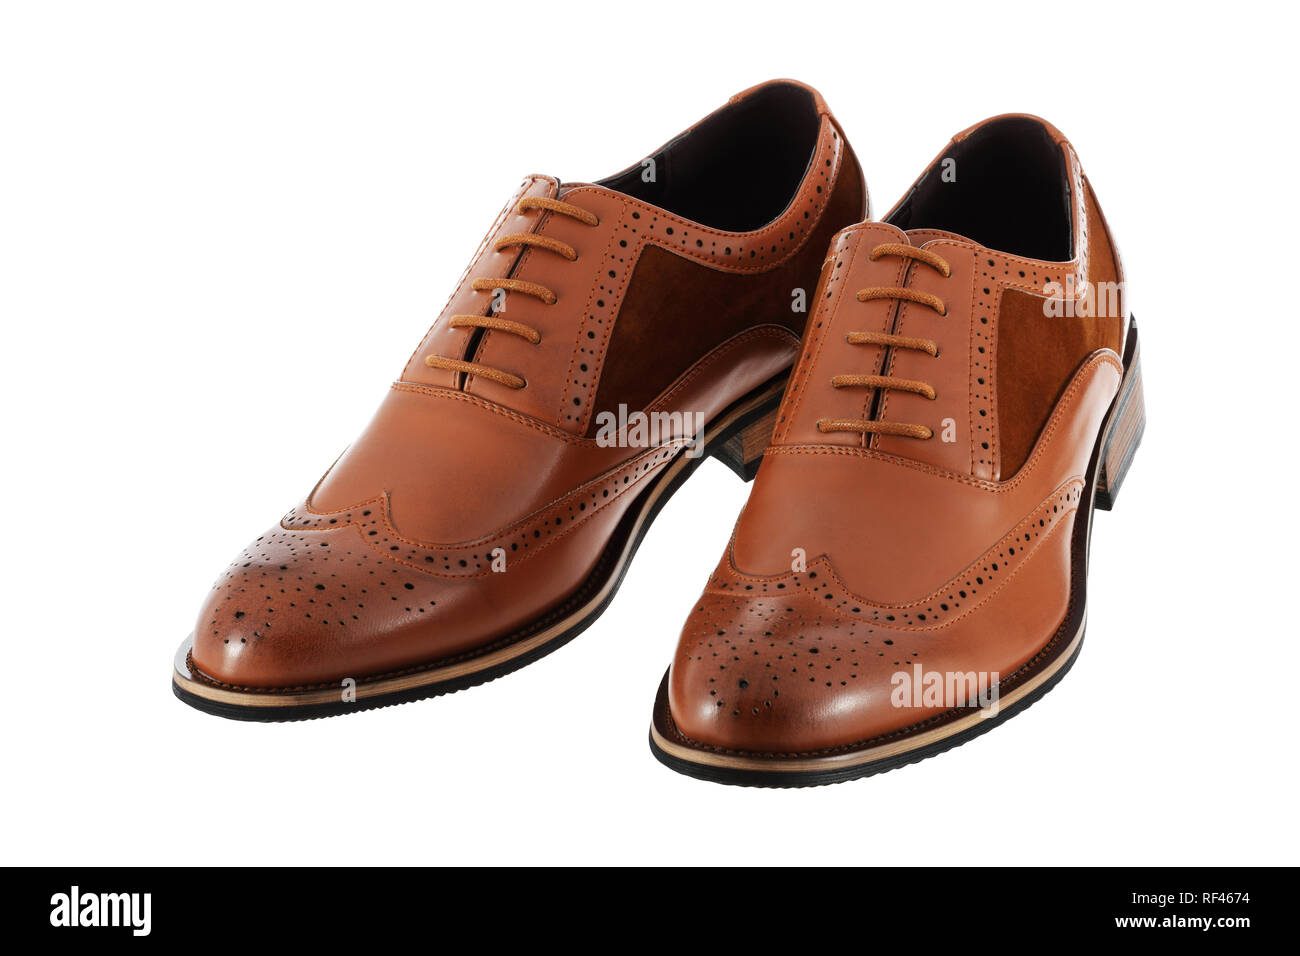 Paire de chaussures pour hommes en cuir brun sur un fond blanc brogues with clipping path Banque D'Images